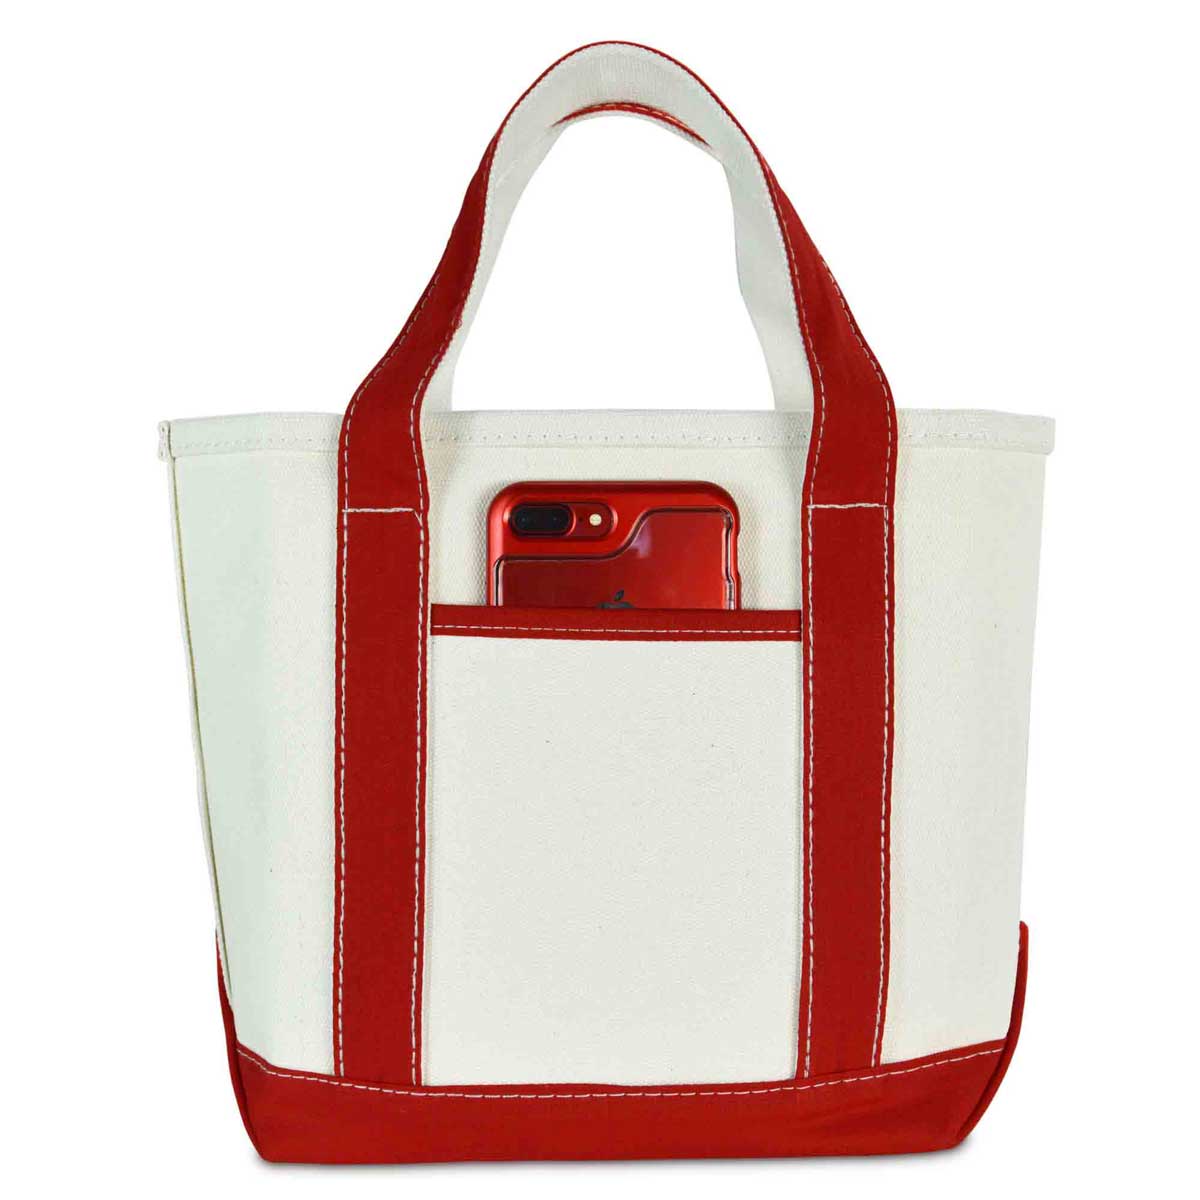 Dalix 14" Small Premium Tote Bag